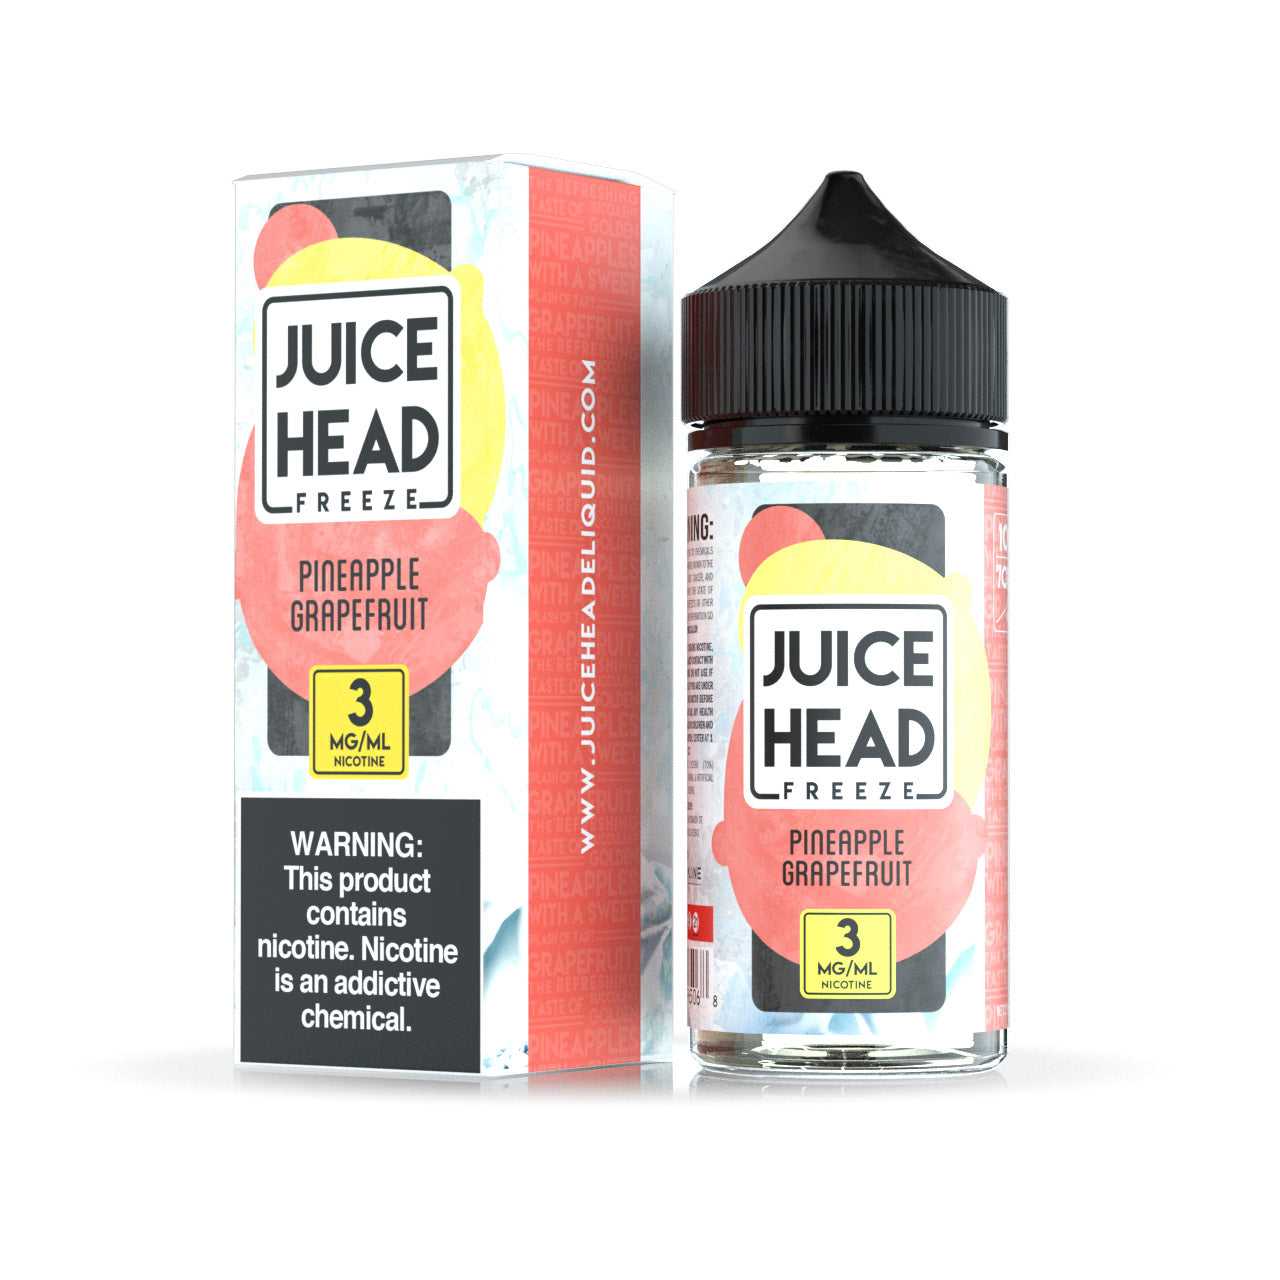 Juice Head - Pineapple Grapefruit Freeze